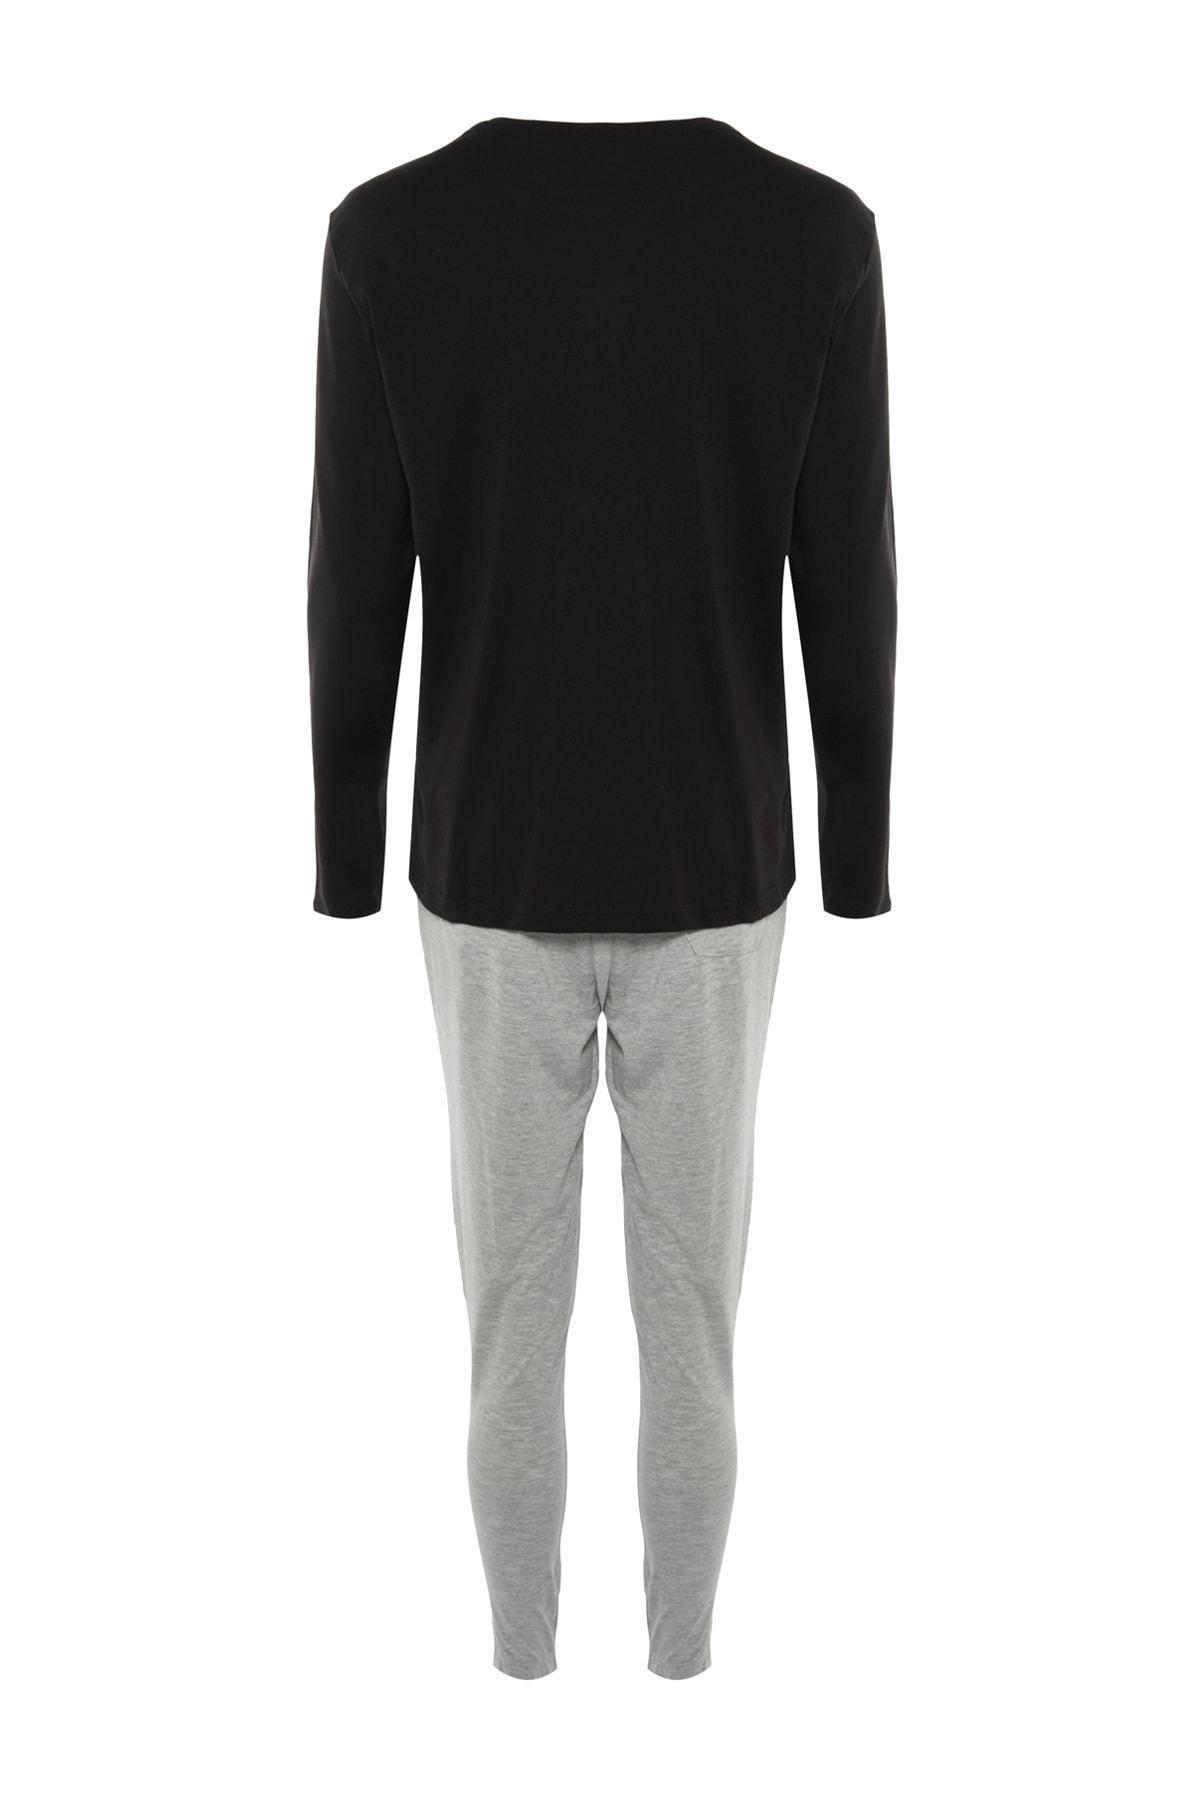 Trendyol - Black Printed Pyjama Co-Ord Set